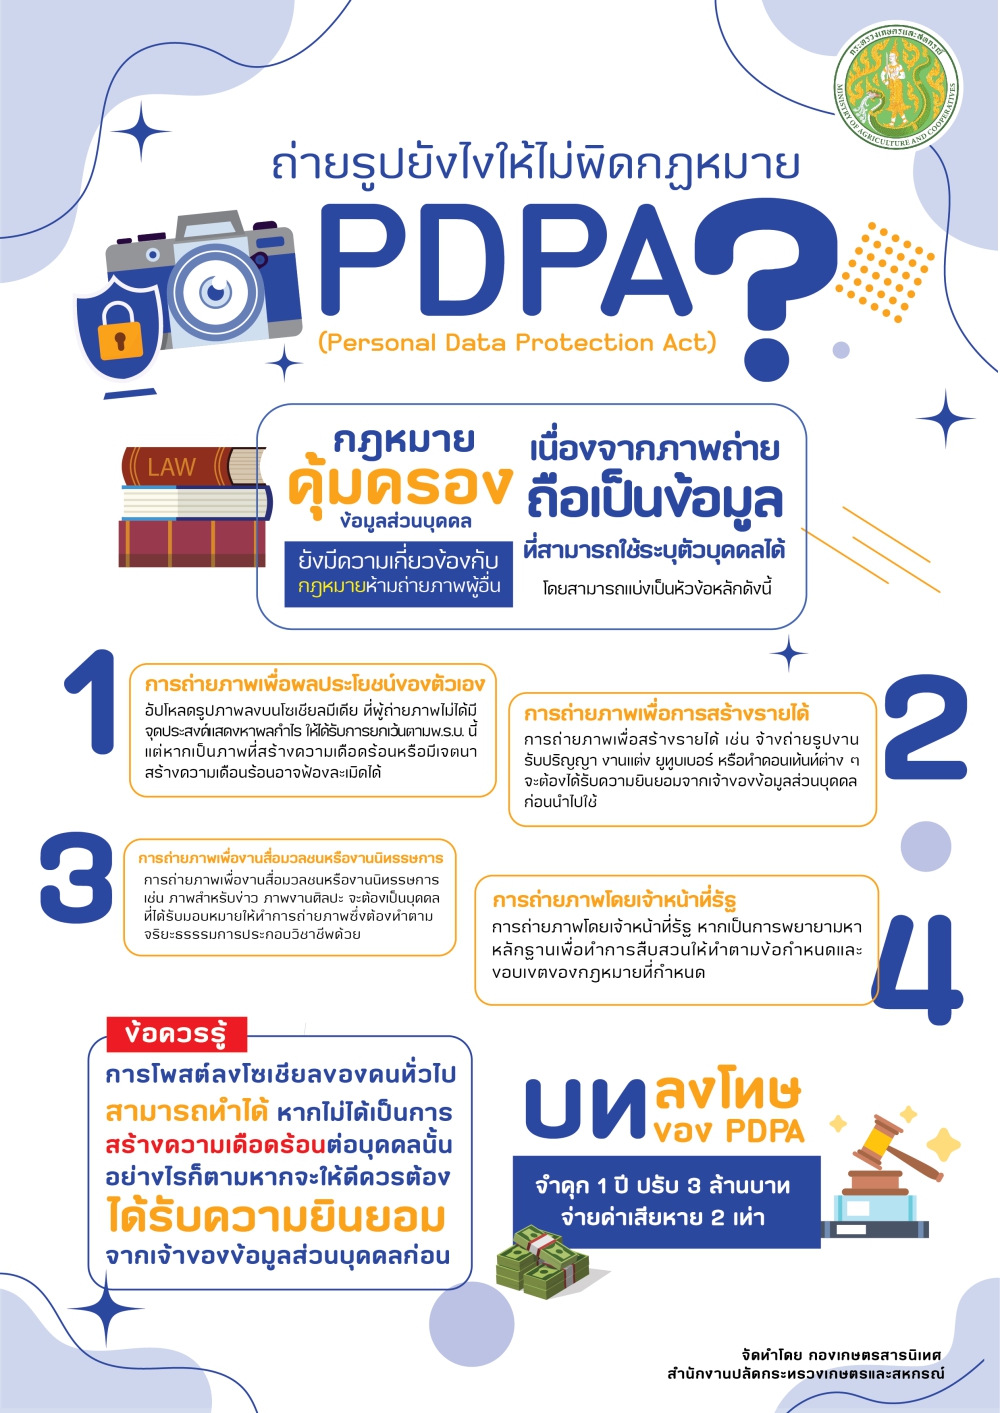 pdpa1